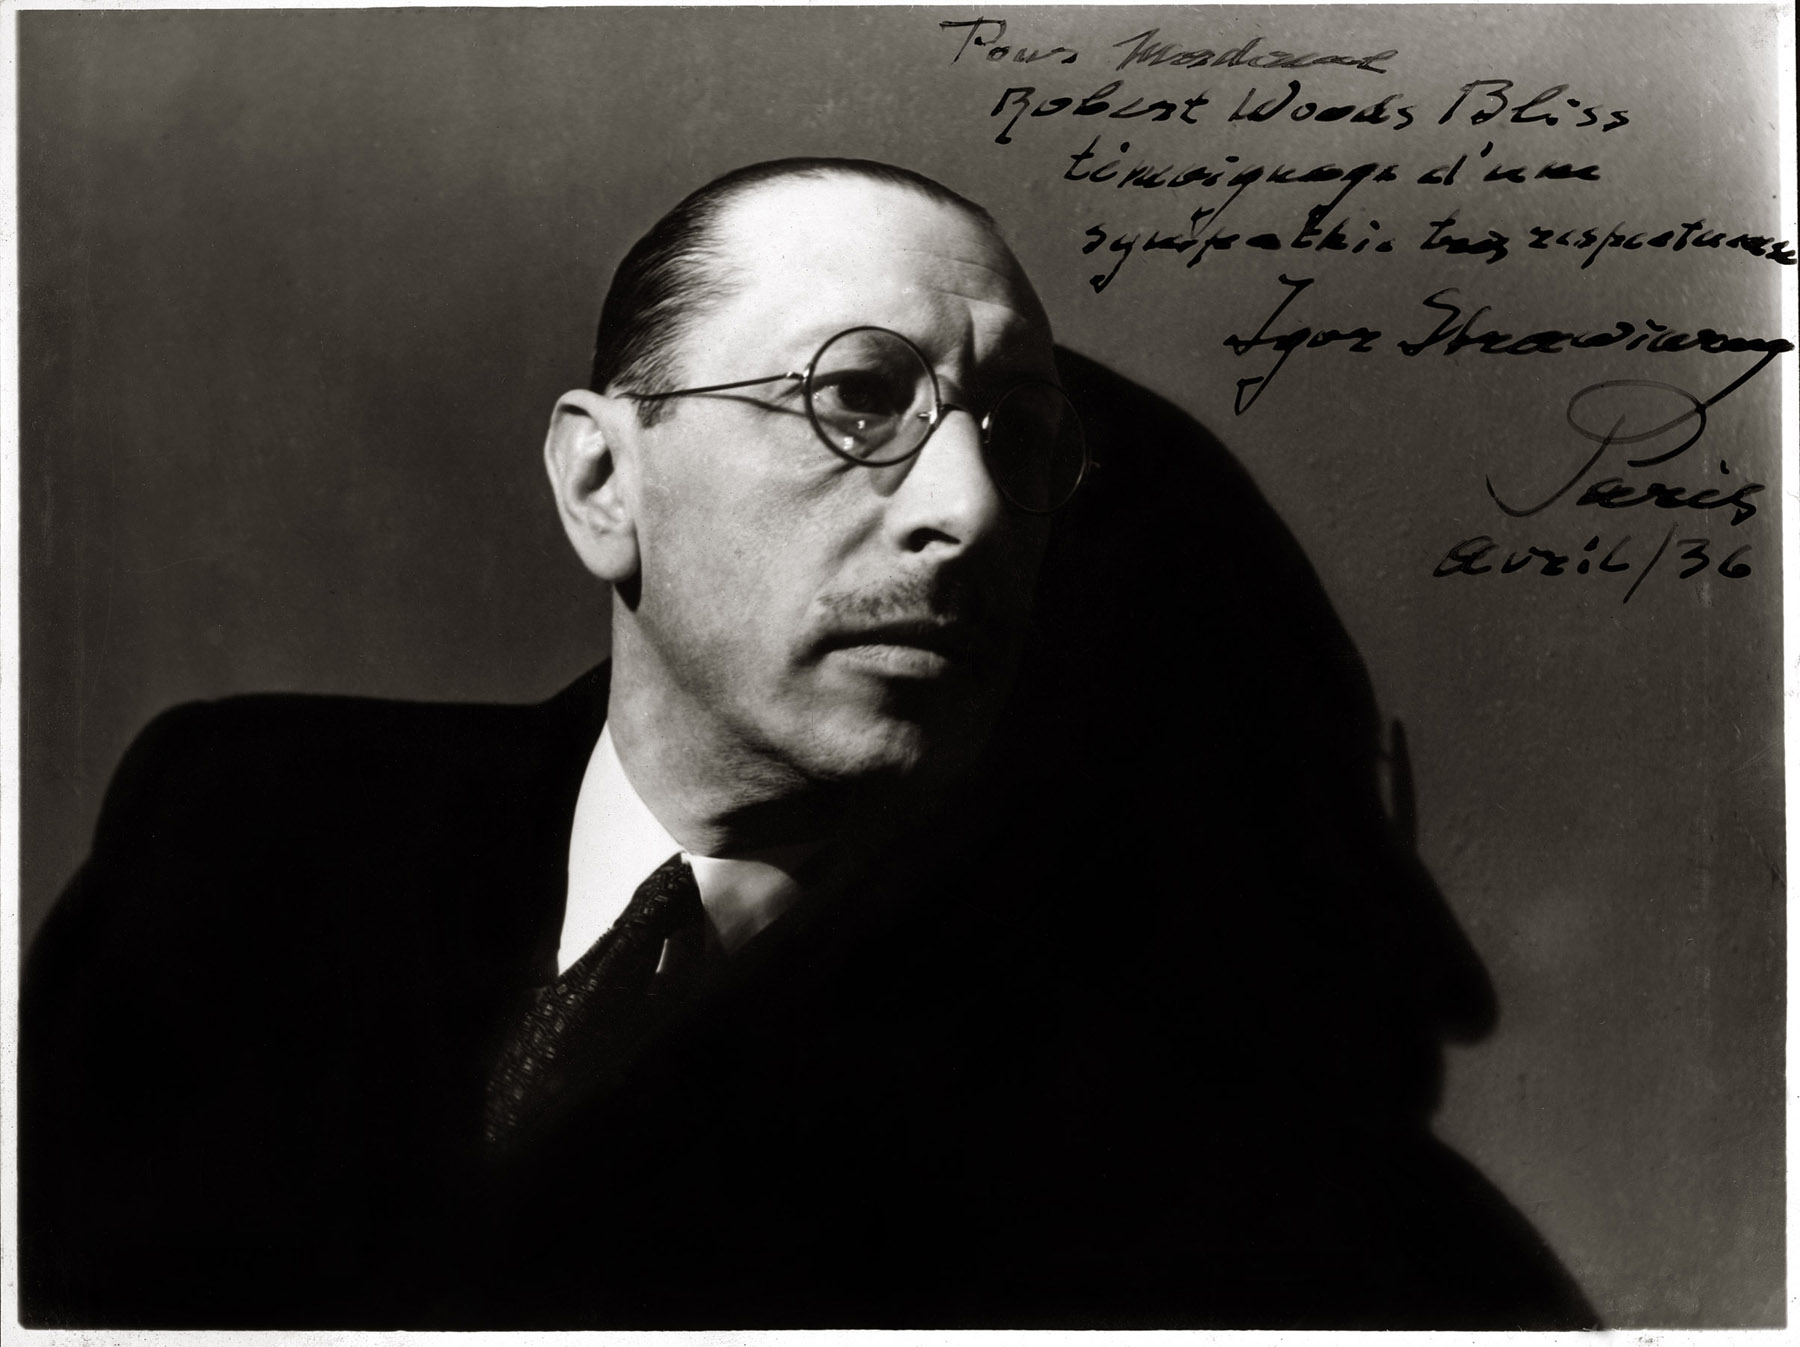 Igor Stravinsky, photograph by , ca. 1936. Inscribed: Pour Madame Robert Woods Bliss témoignage d'une sympathie très respectueux Igor Stravinsky Paris Avril / 36.